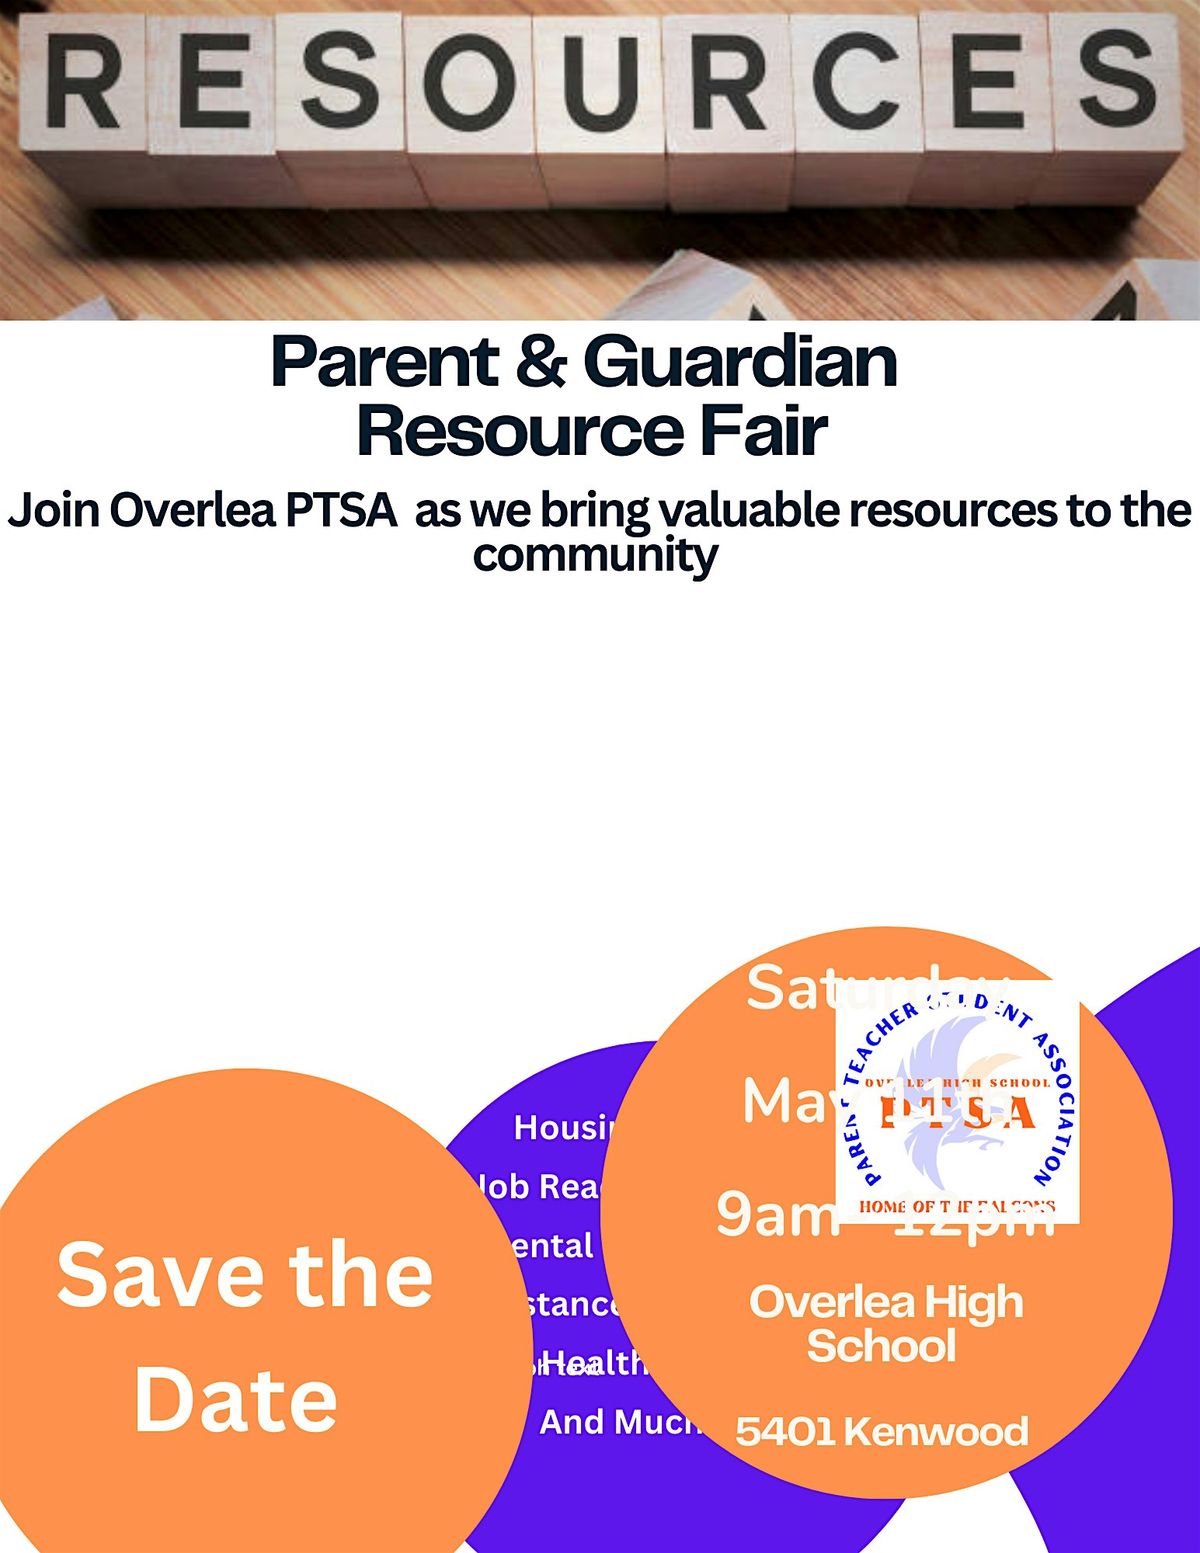 Parent & Guardian Resource Fair at Overlea